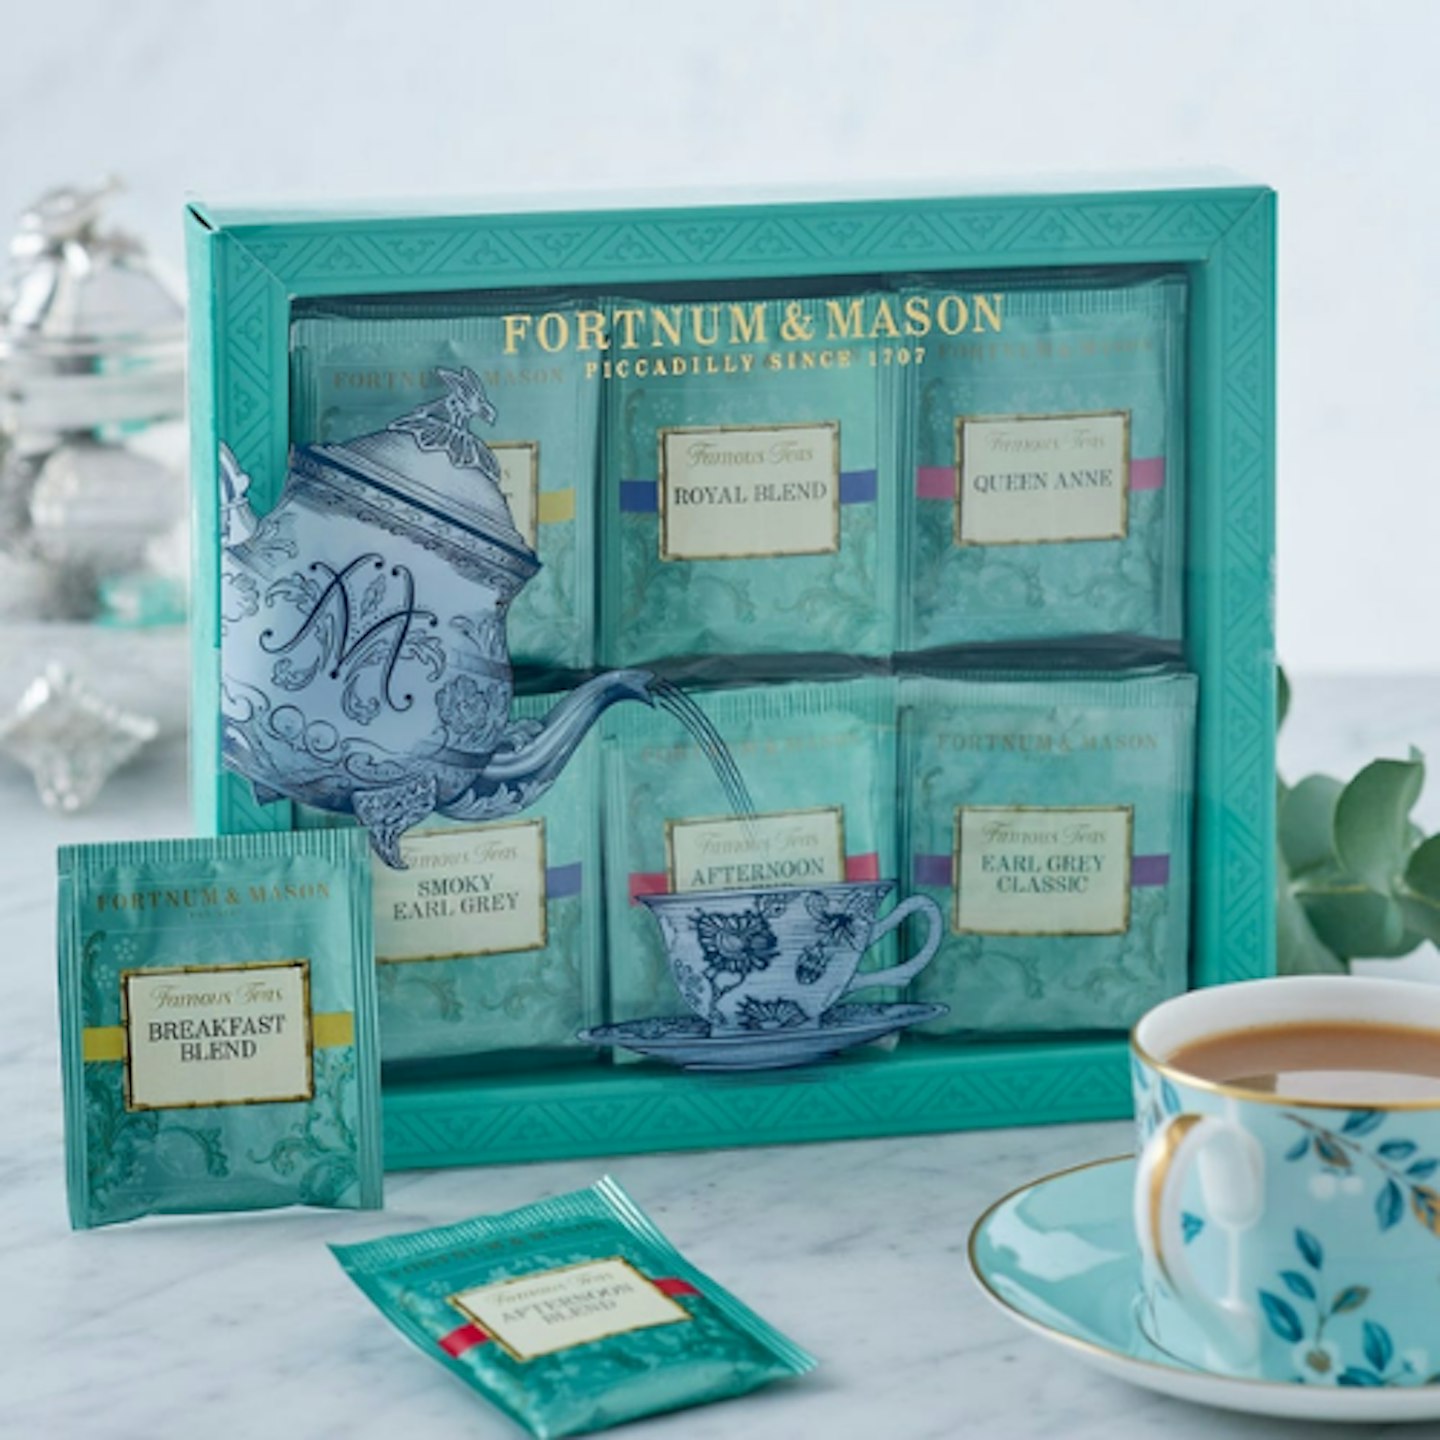 Fortnum's Famous Tea Selection, 60 Tea Bags, 120g